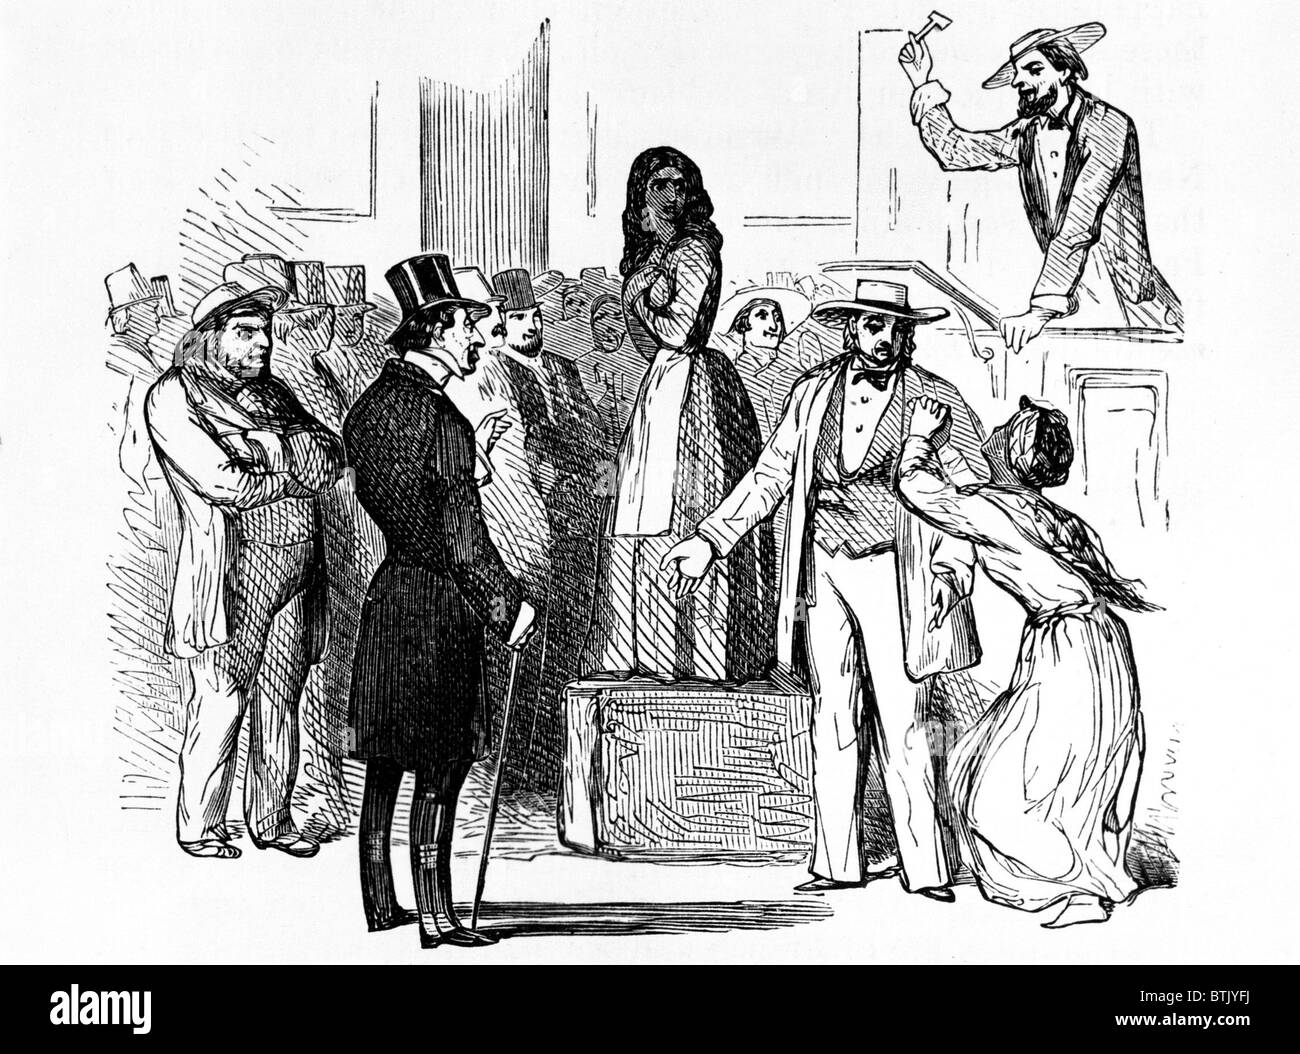 Subasta de esclavos en el sur de Estados Unidos, a principios de 1800 Foto de stock